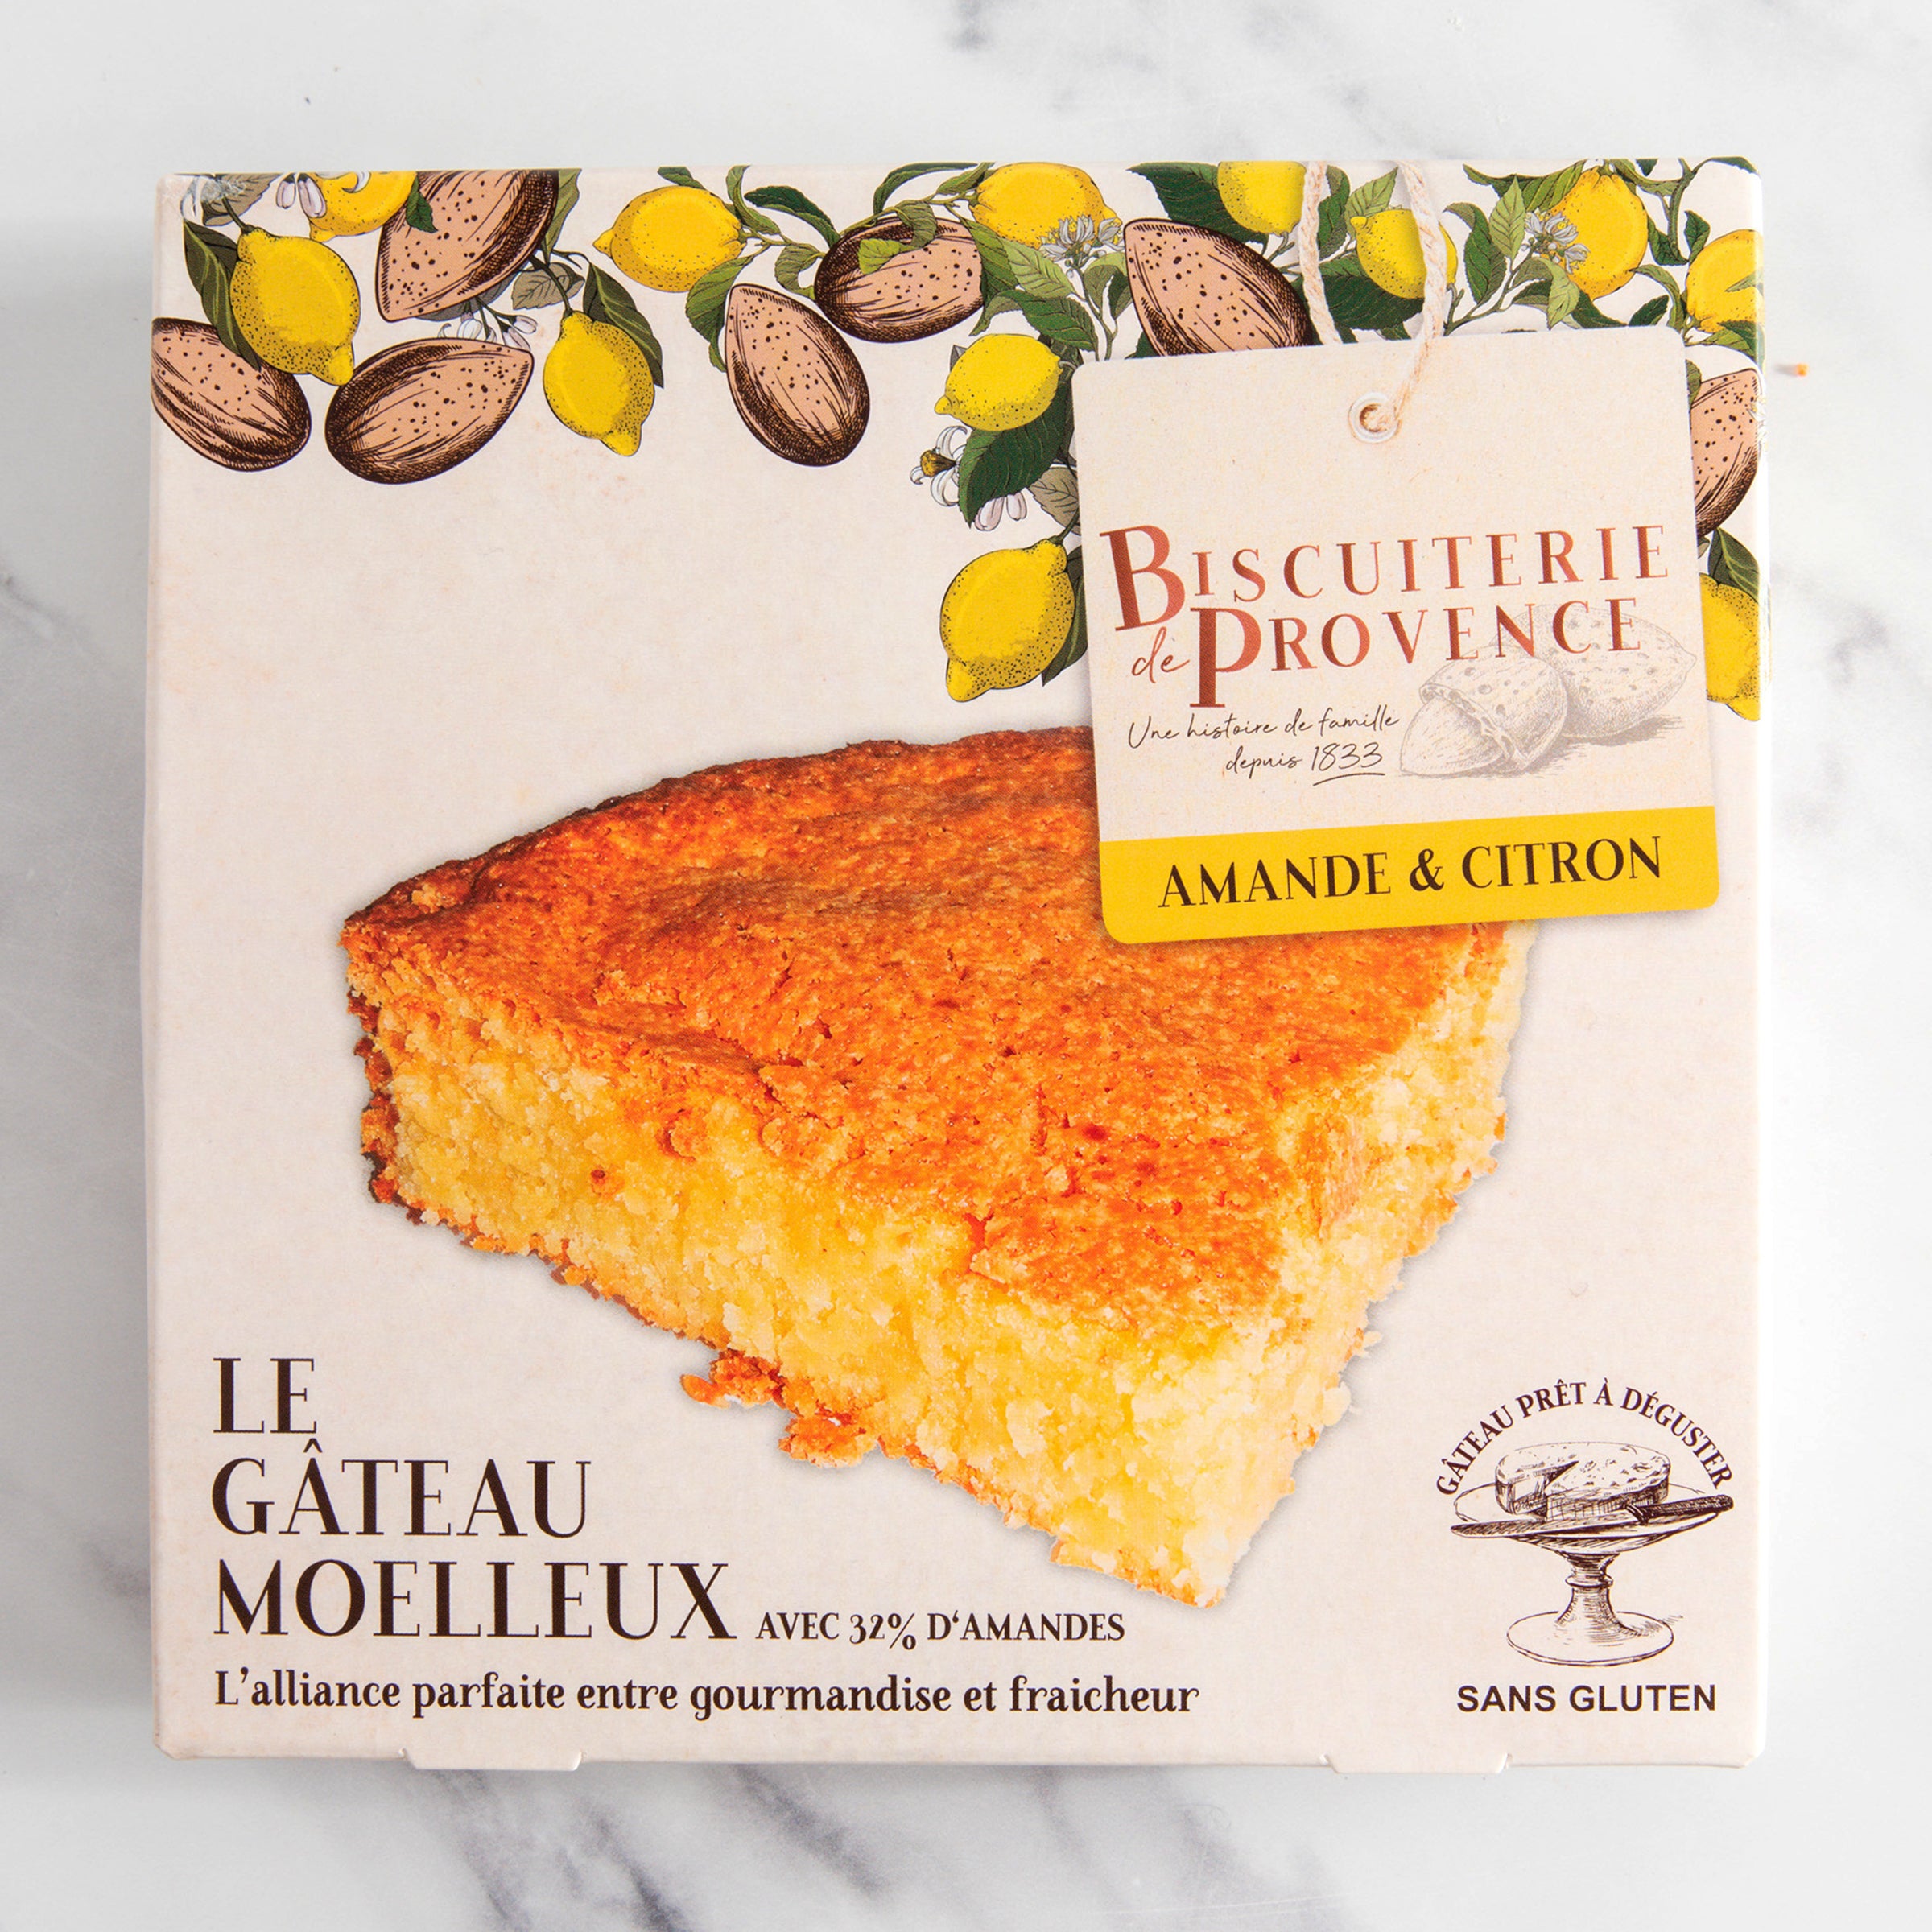 igourmet_15091_Gluten Free Almond Cake_Biscuiterie de Provence_Cookies & Biscuits